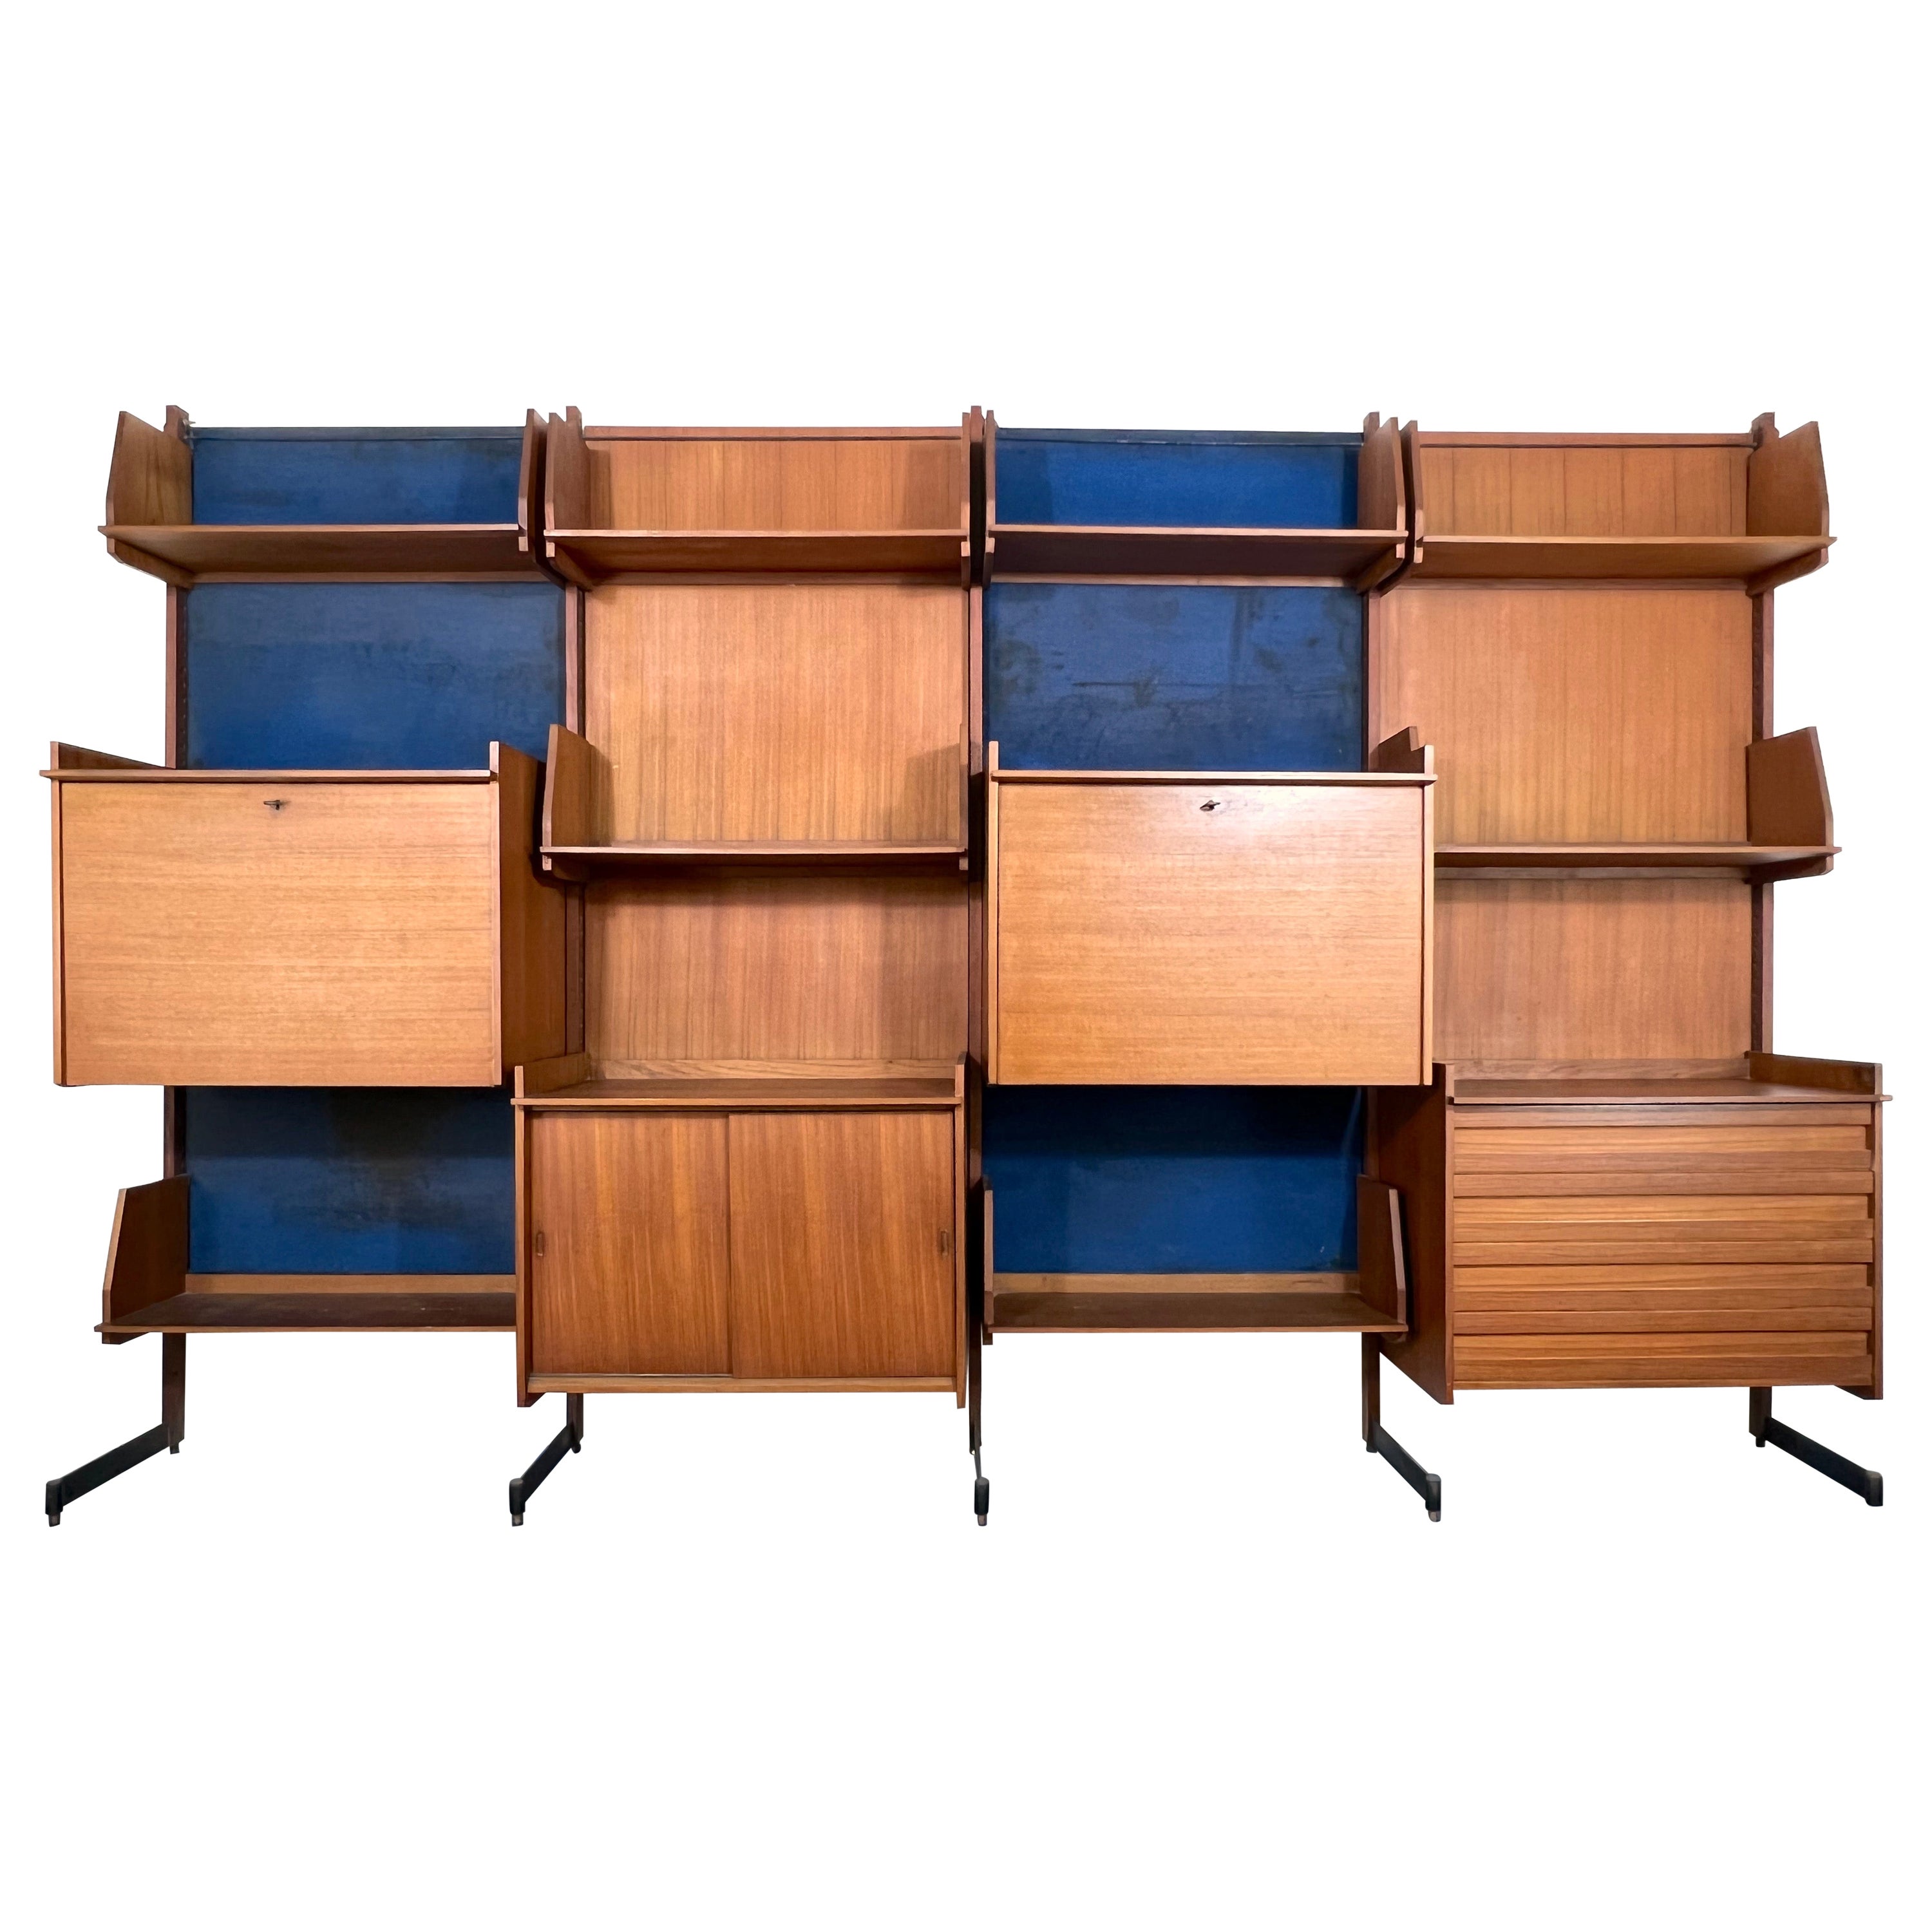 Bibliothèque modulaire en bois The Modernity des années 50